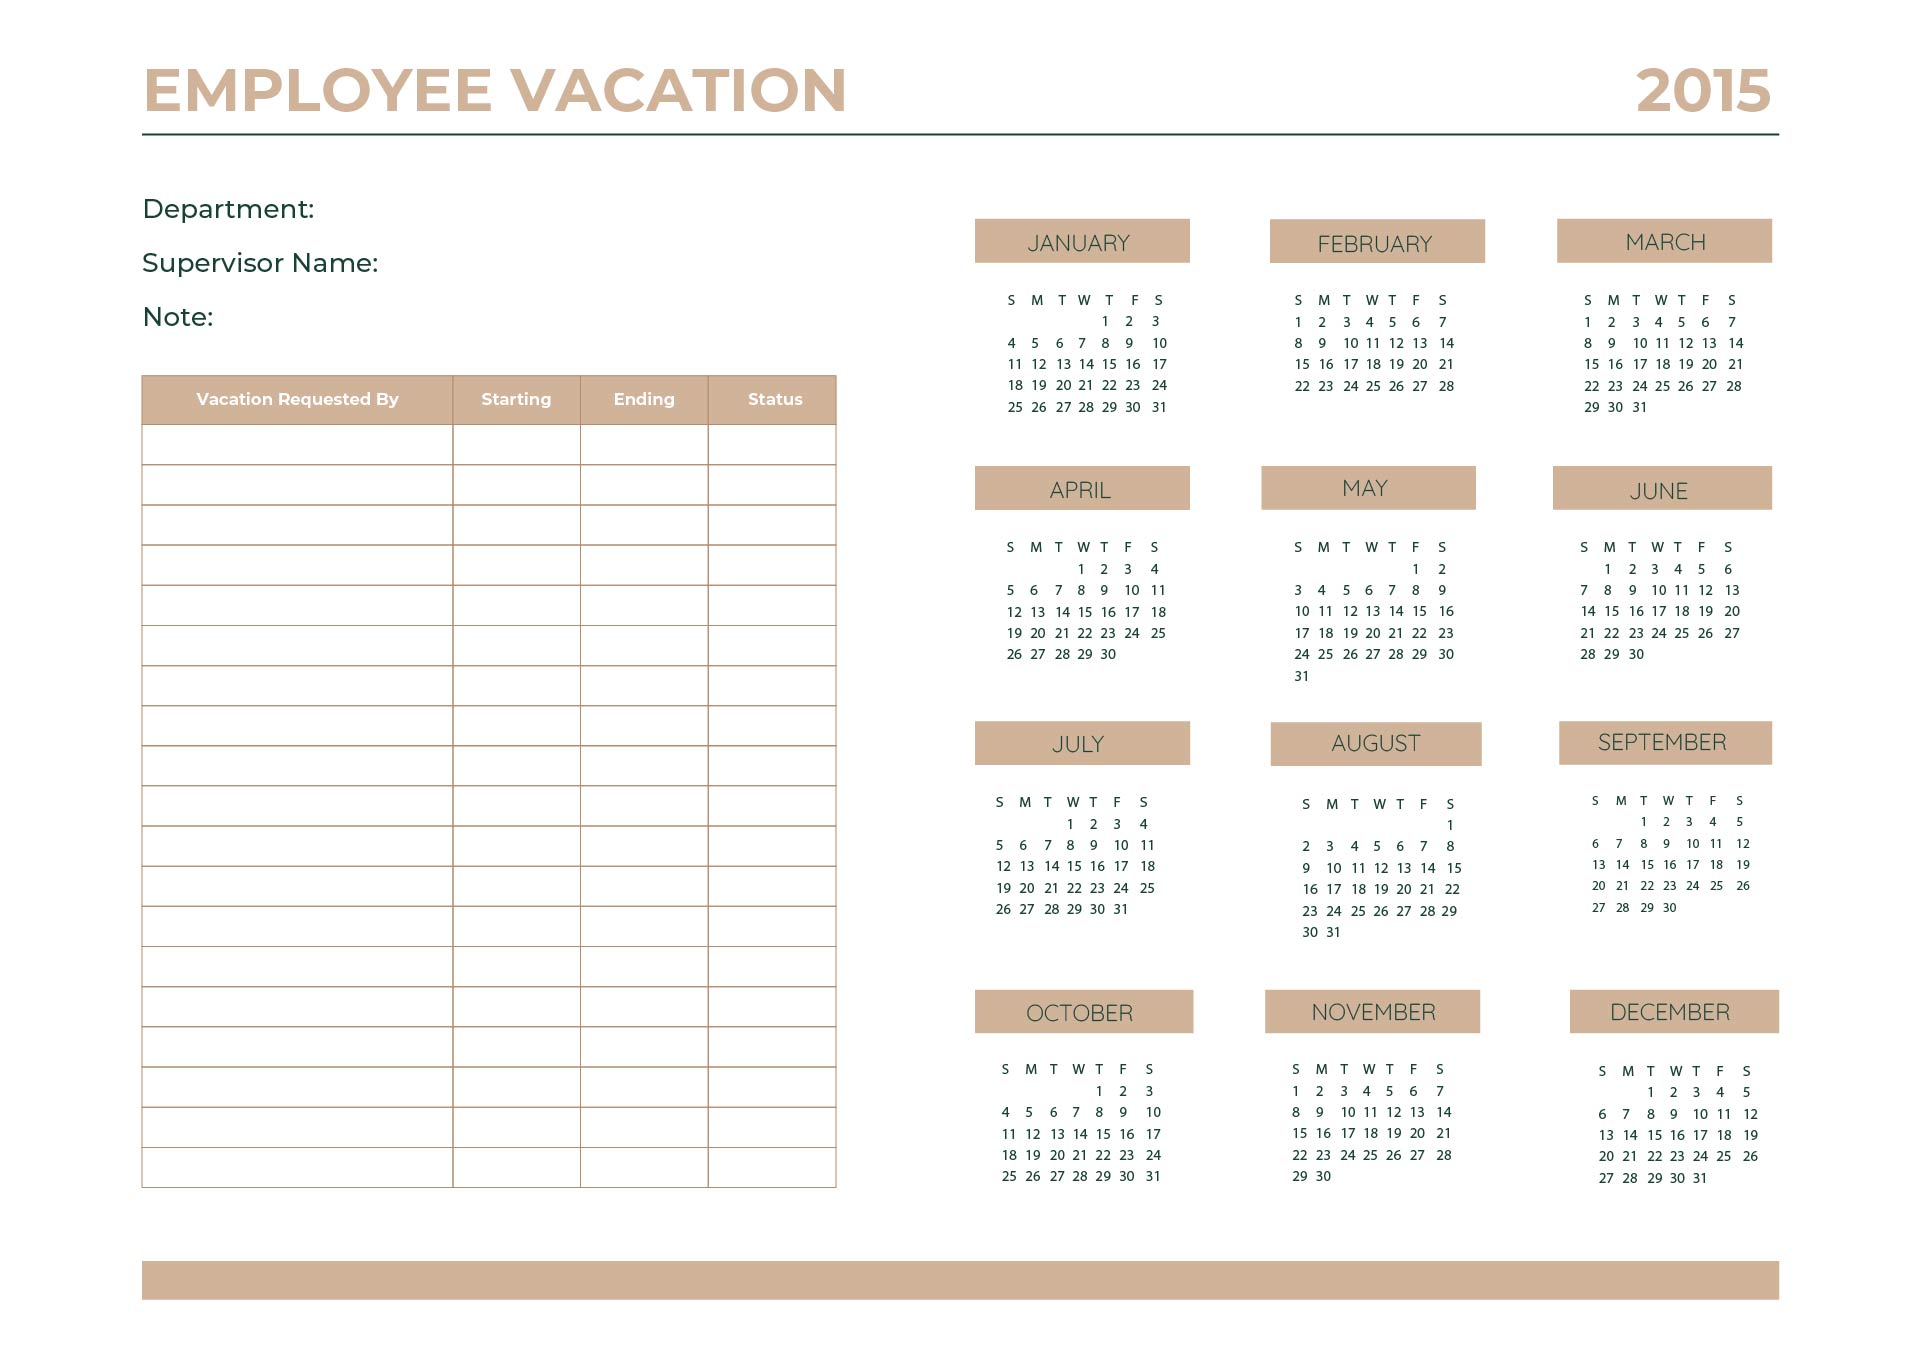 Employee Vacation Calendar Template 2015